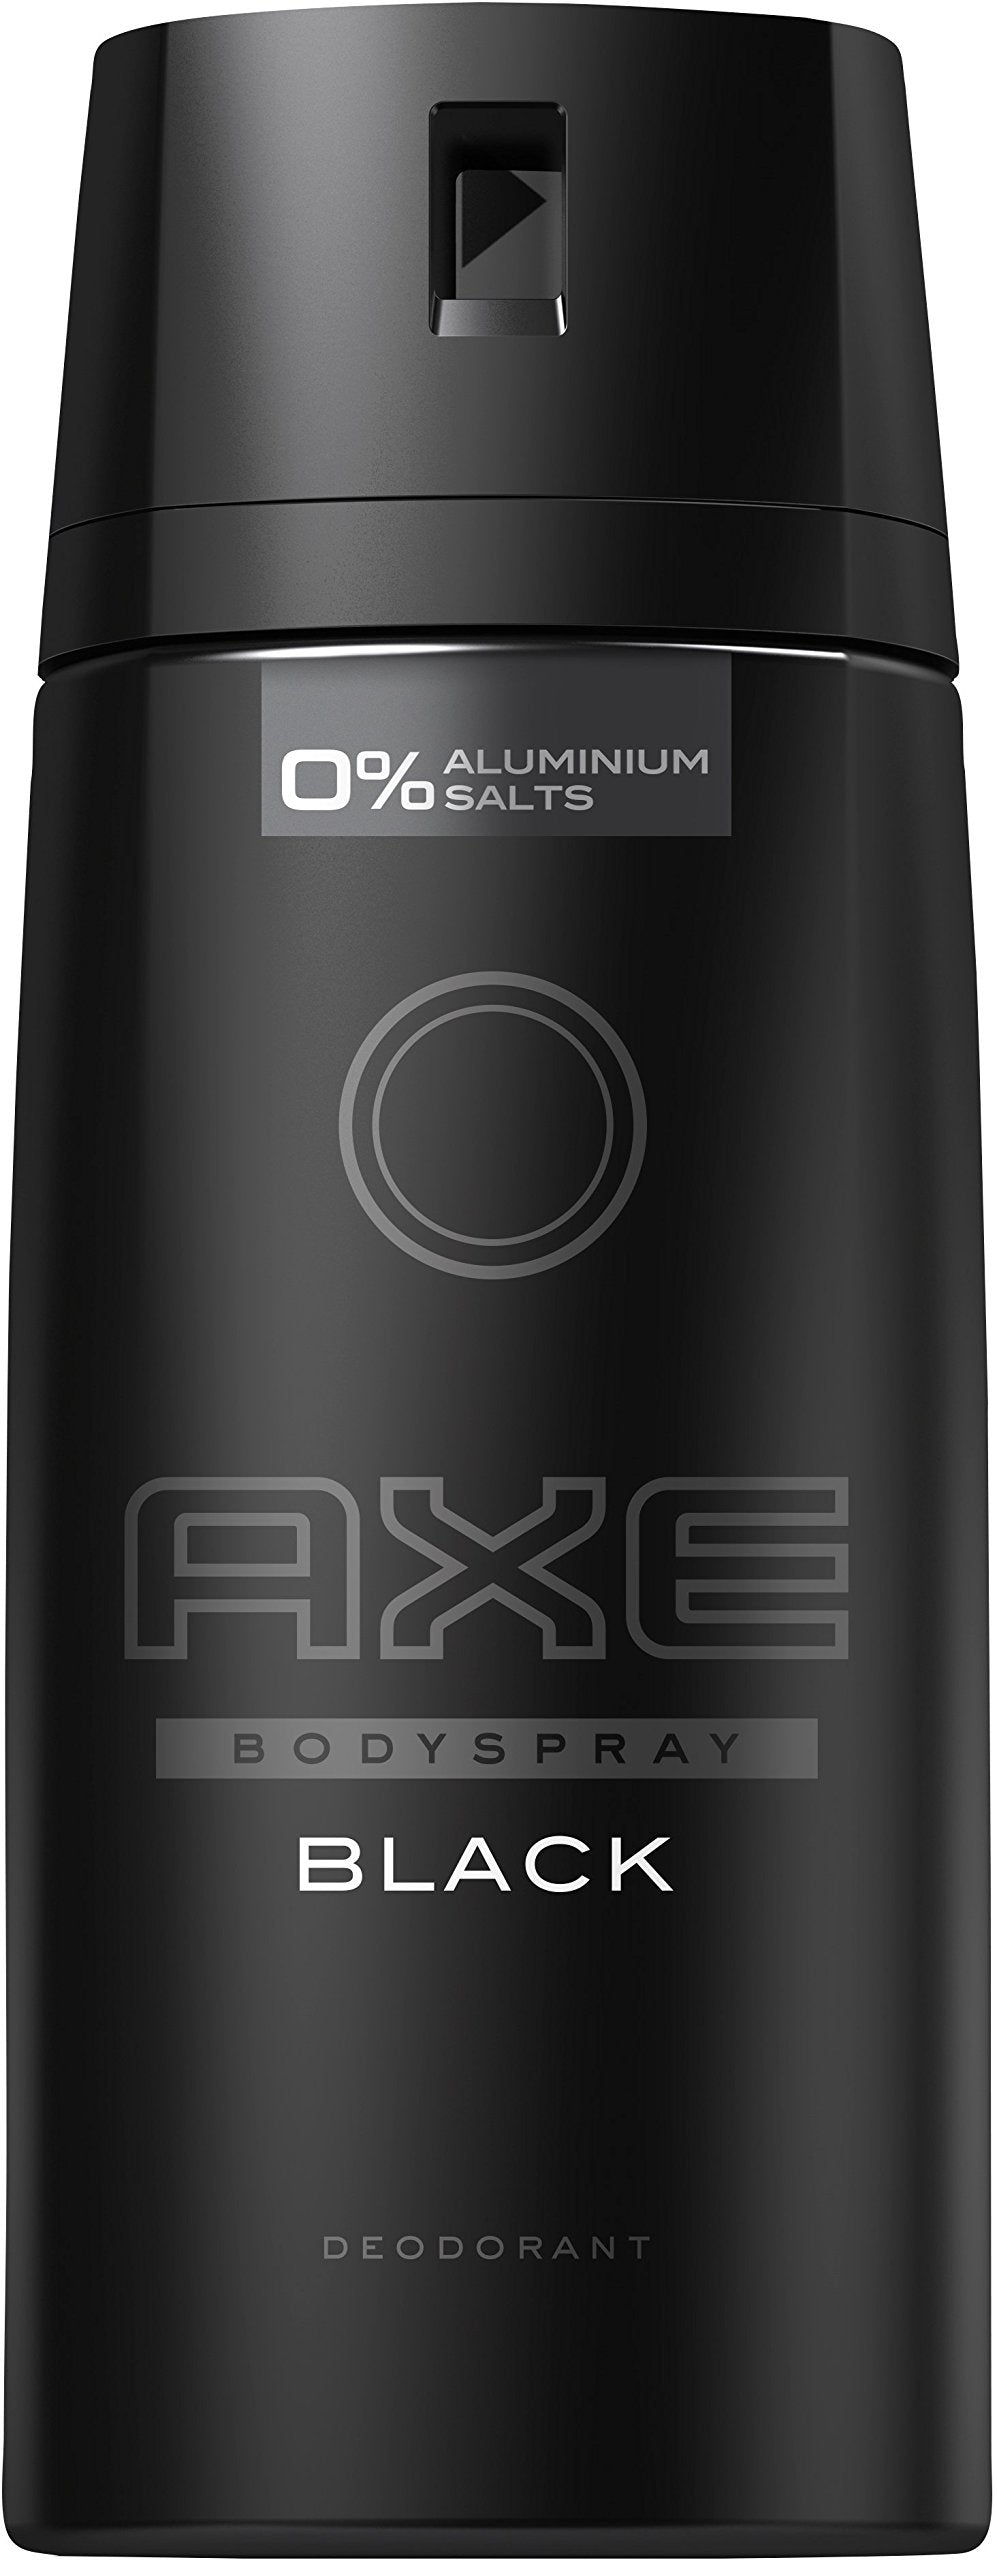 AXE DEO Body Spray Black - 5oz/150ml/6pk